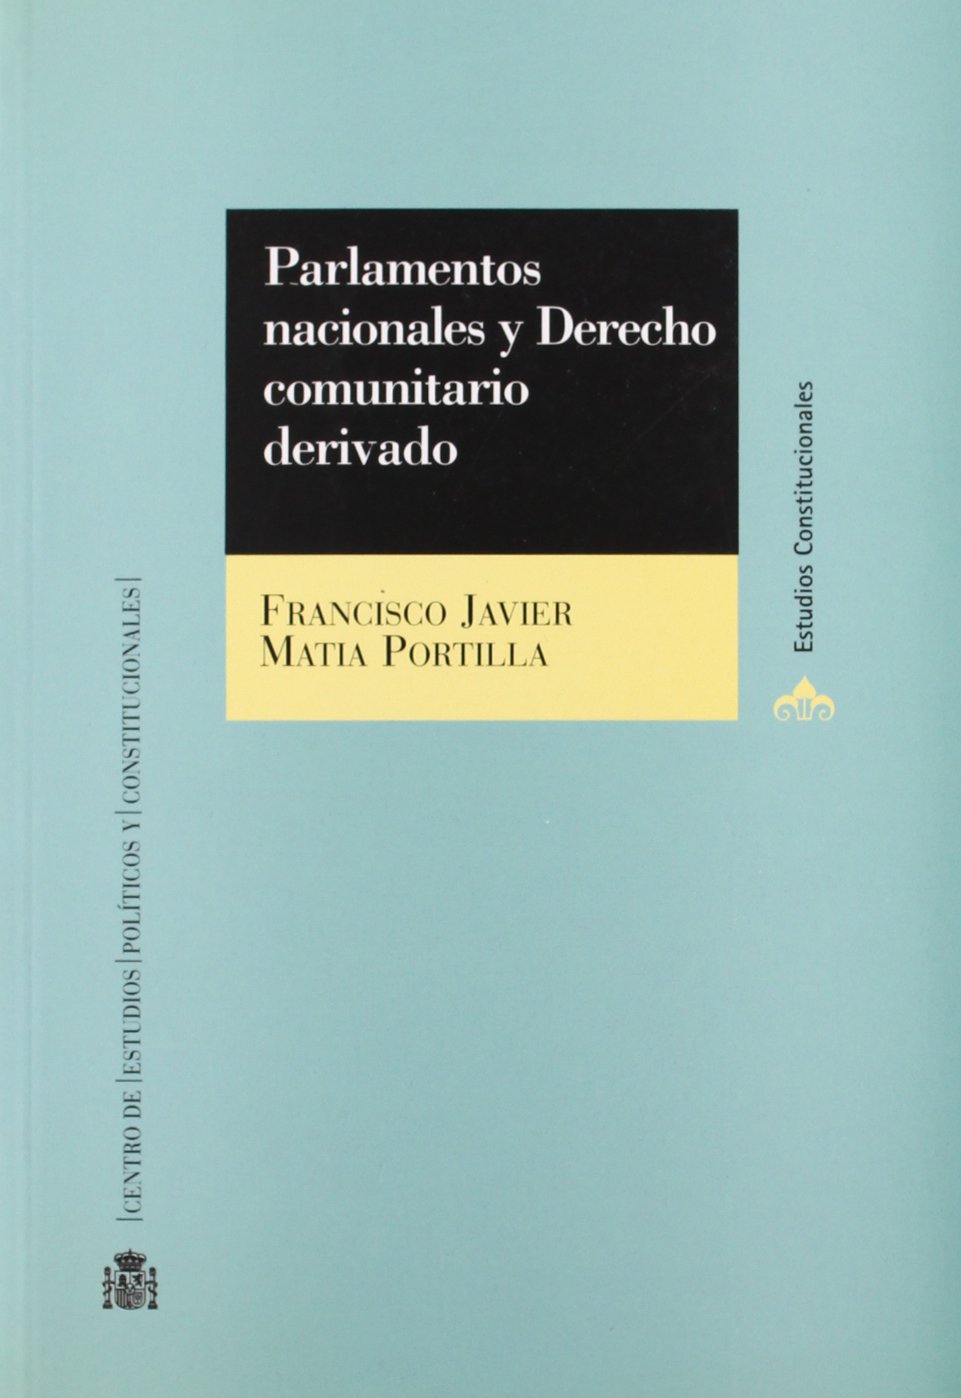 Parlamentos nacionales y Derecho comunitario derivado